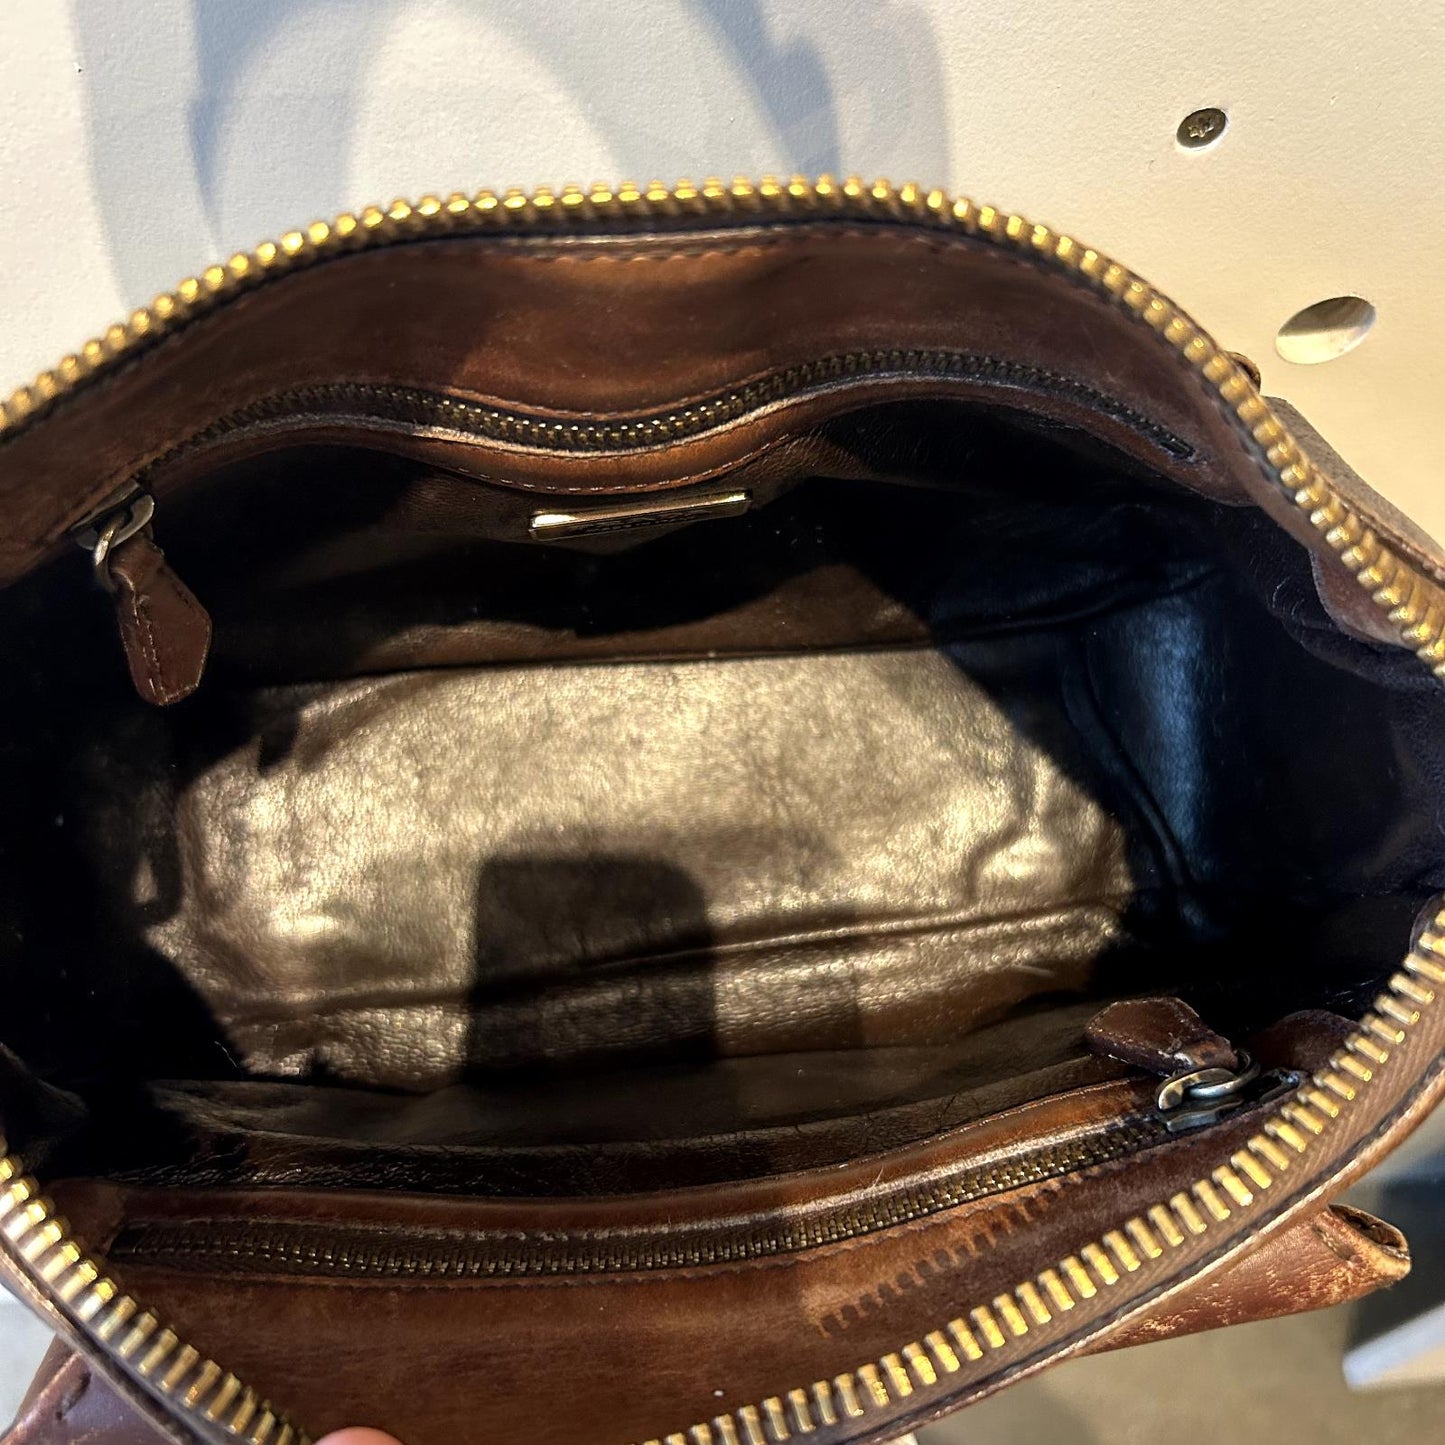 Prada Brown Distressed Leather Top Zip Vintage Shoulder Bag Purse 1202KA